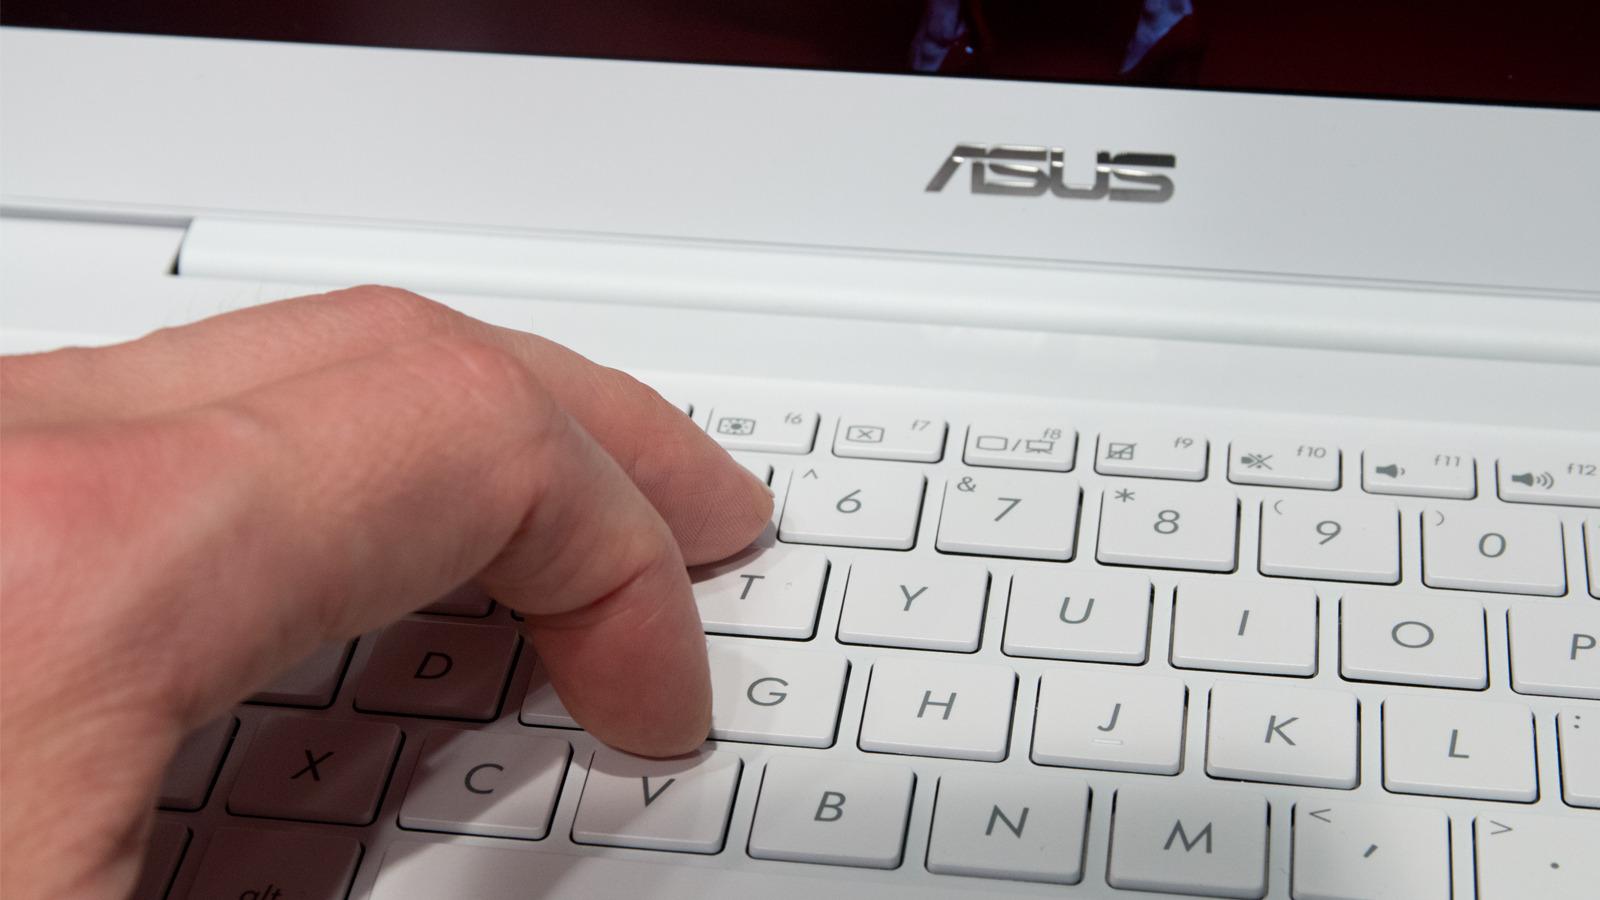 Asus ZenBook UX305